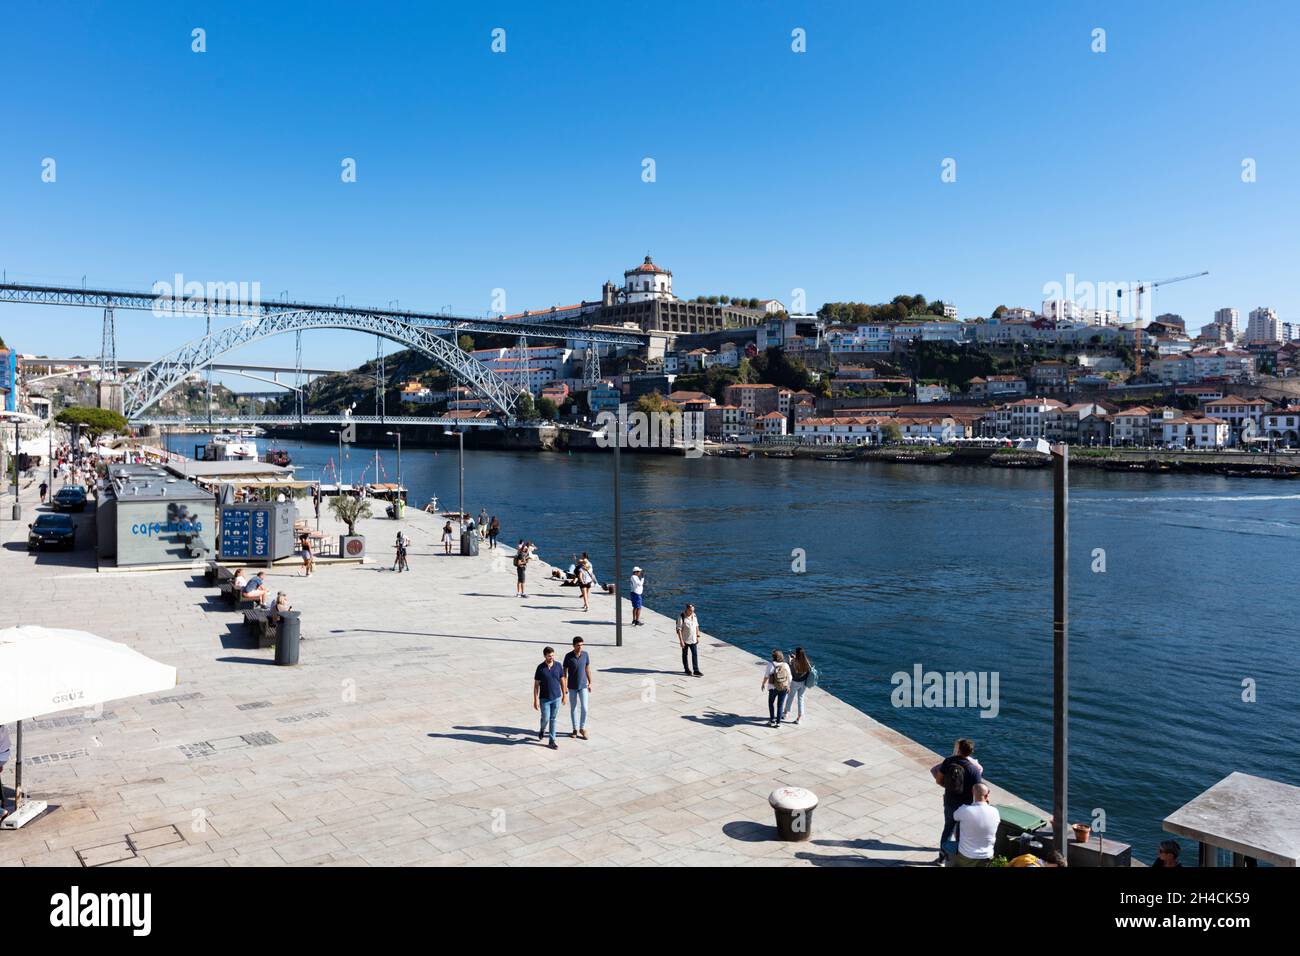 Fußgängerpromenade entlang des Douro in der Altstadt von Porto. Im Hintergrund ist die Brücke Pond Luis I zu sehen. Menschen flanieren, sind nicht zu . Stock Photo